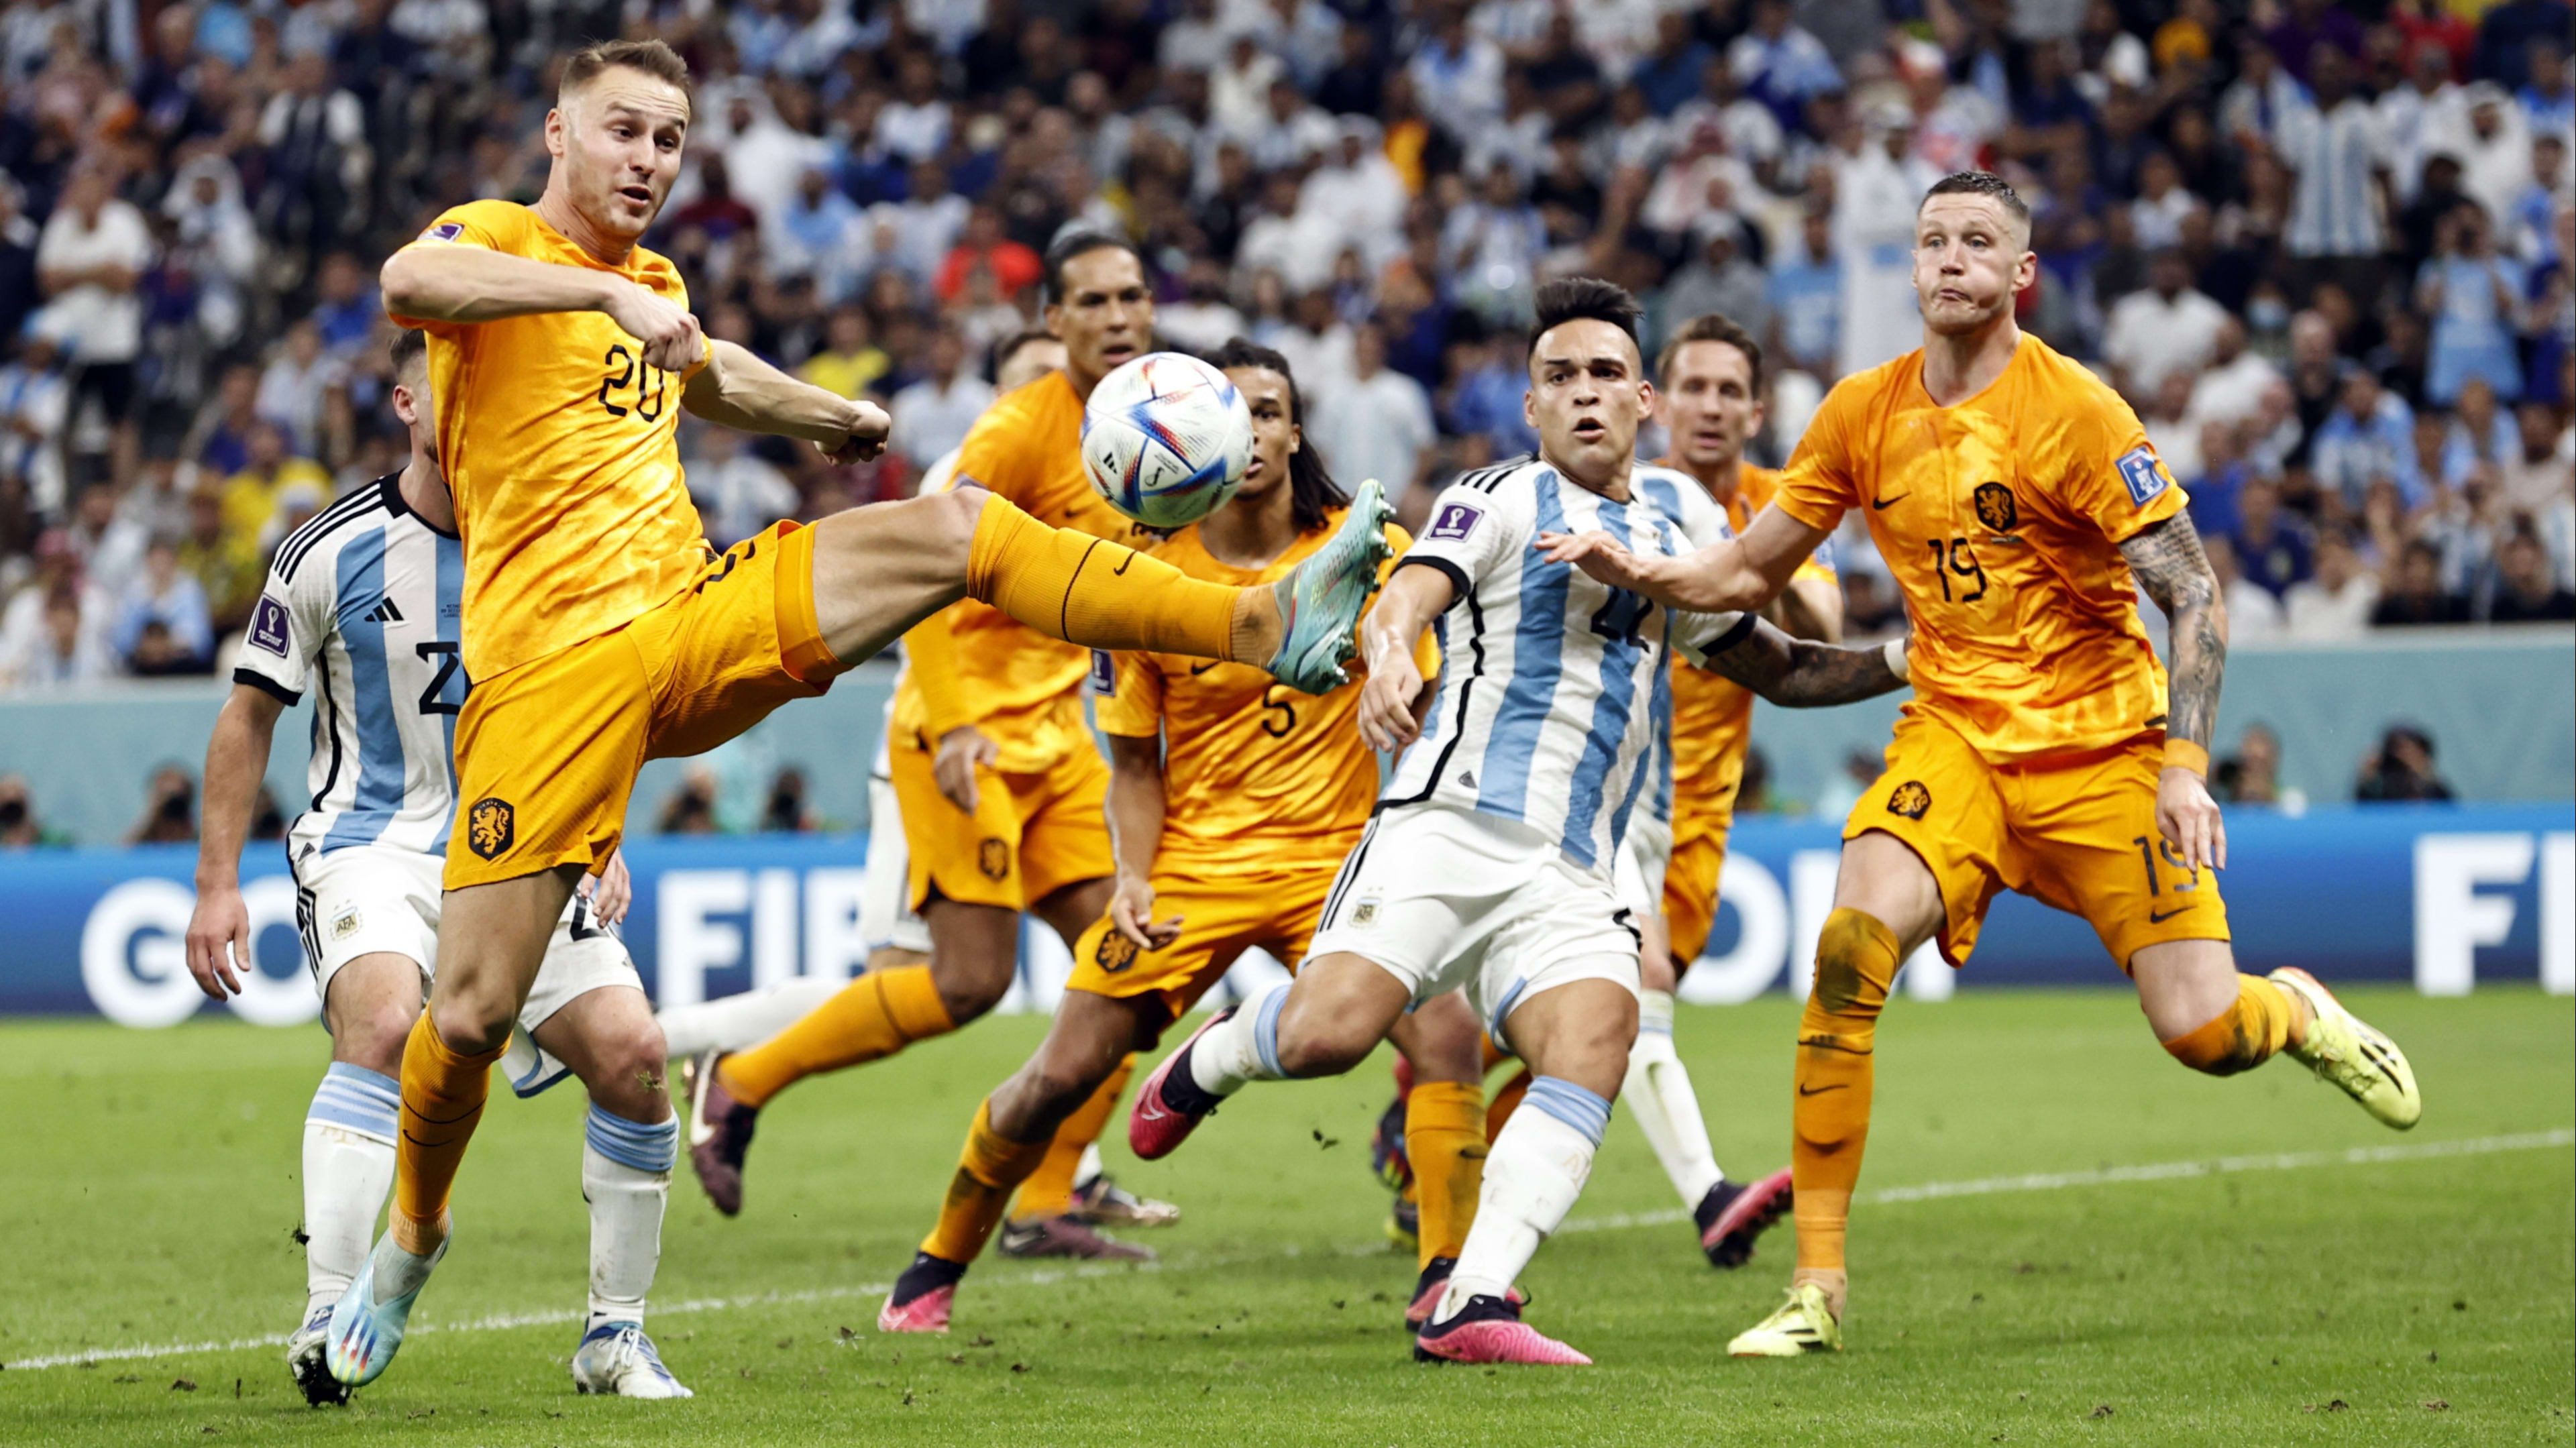 Ruim 5,6 miljoen kijkers zien Nederland alsnog ten onder gaan tegen Argentinië